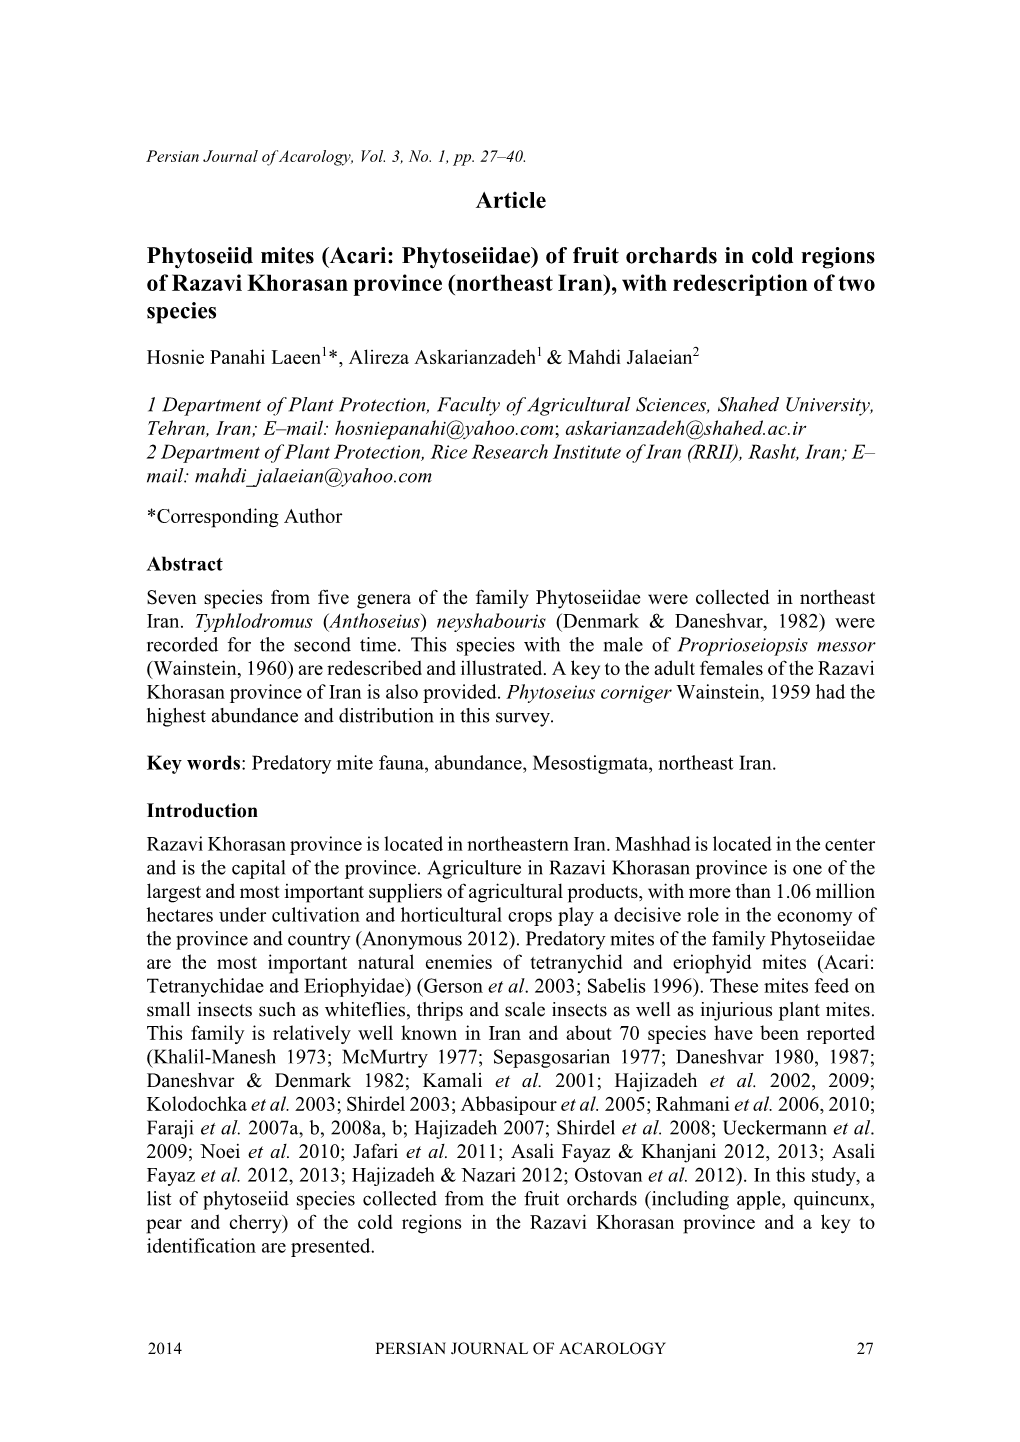 Article Phytoseiid Mites (Acari: Phytoseiidae)